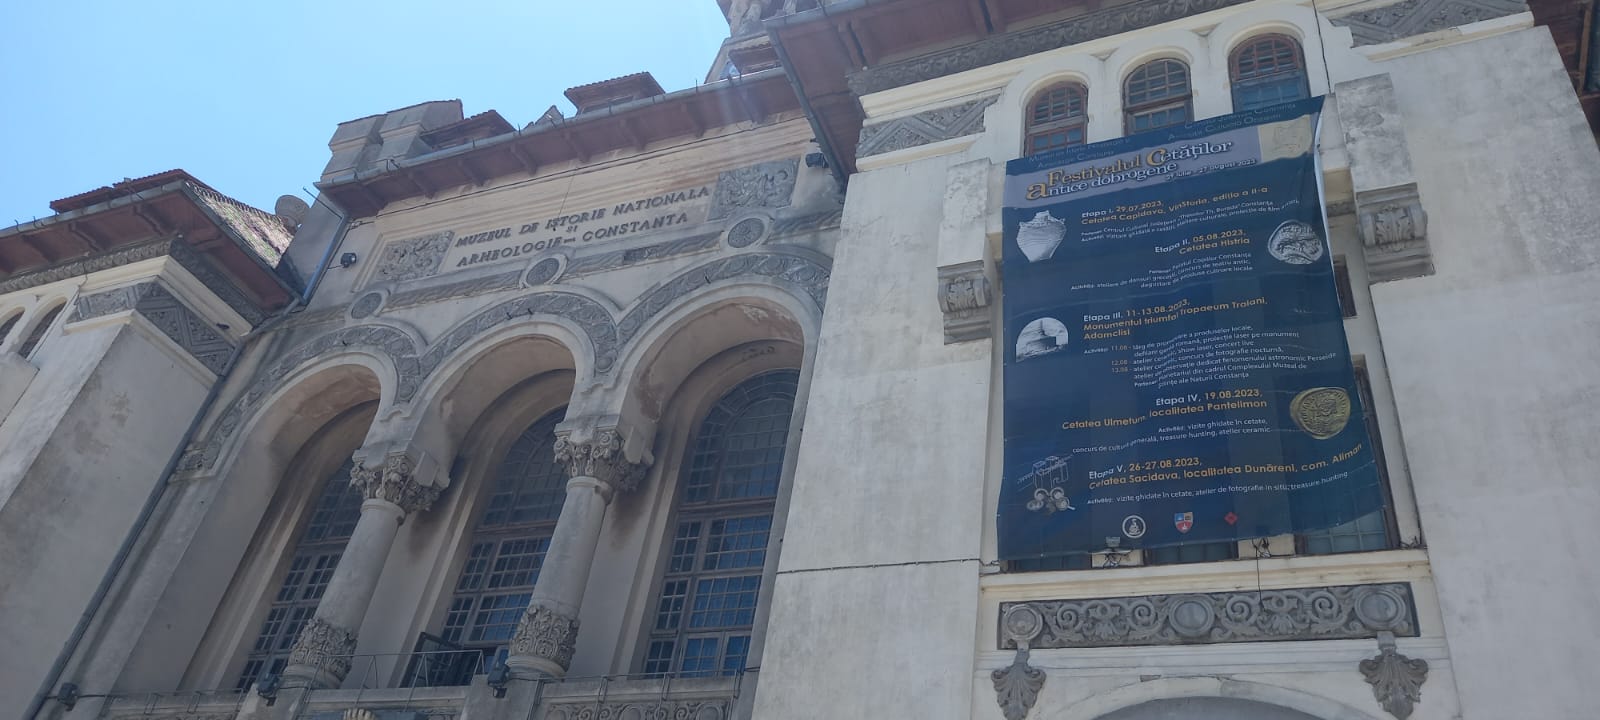 Muzeul de Istorie Națională și Arheologie Constanța organizează prima ediție a Festivalului cetăților antice dobrogene